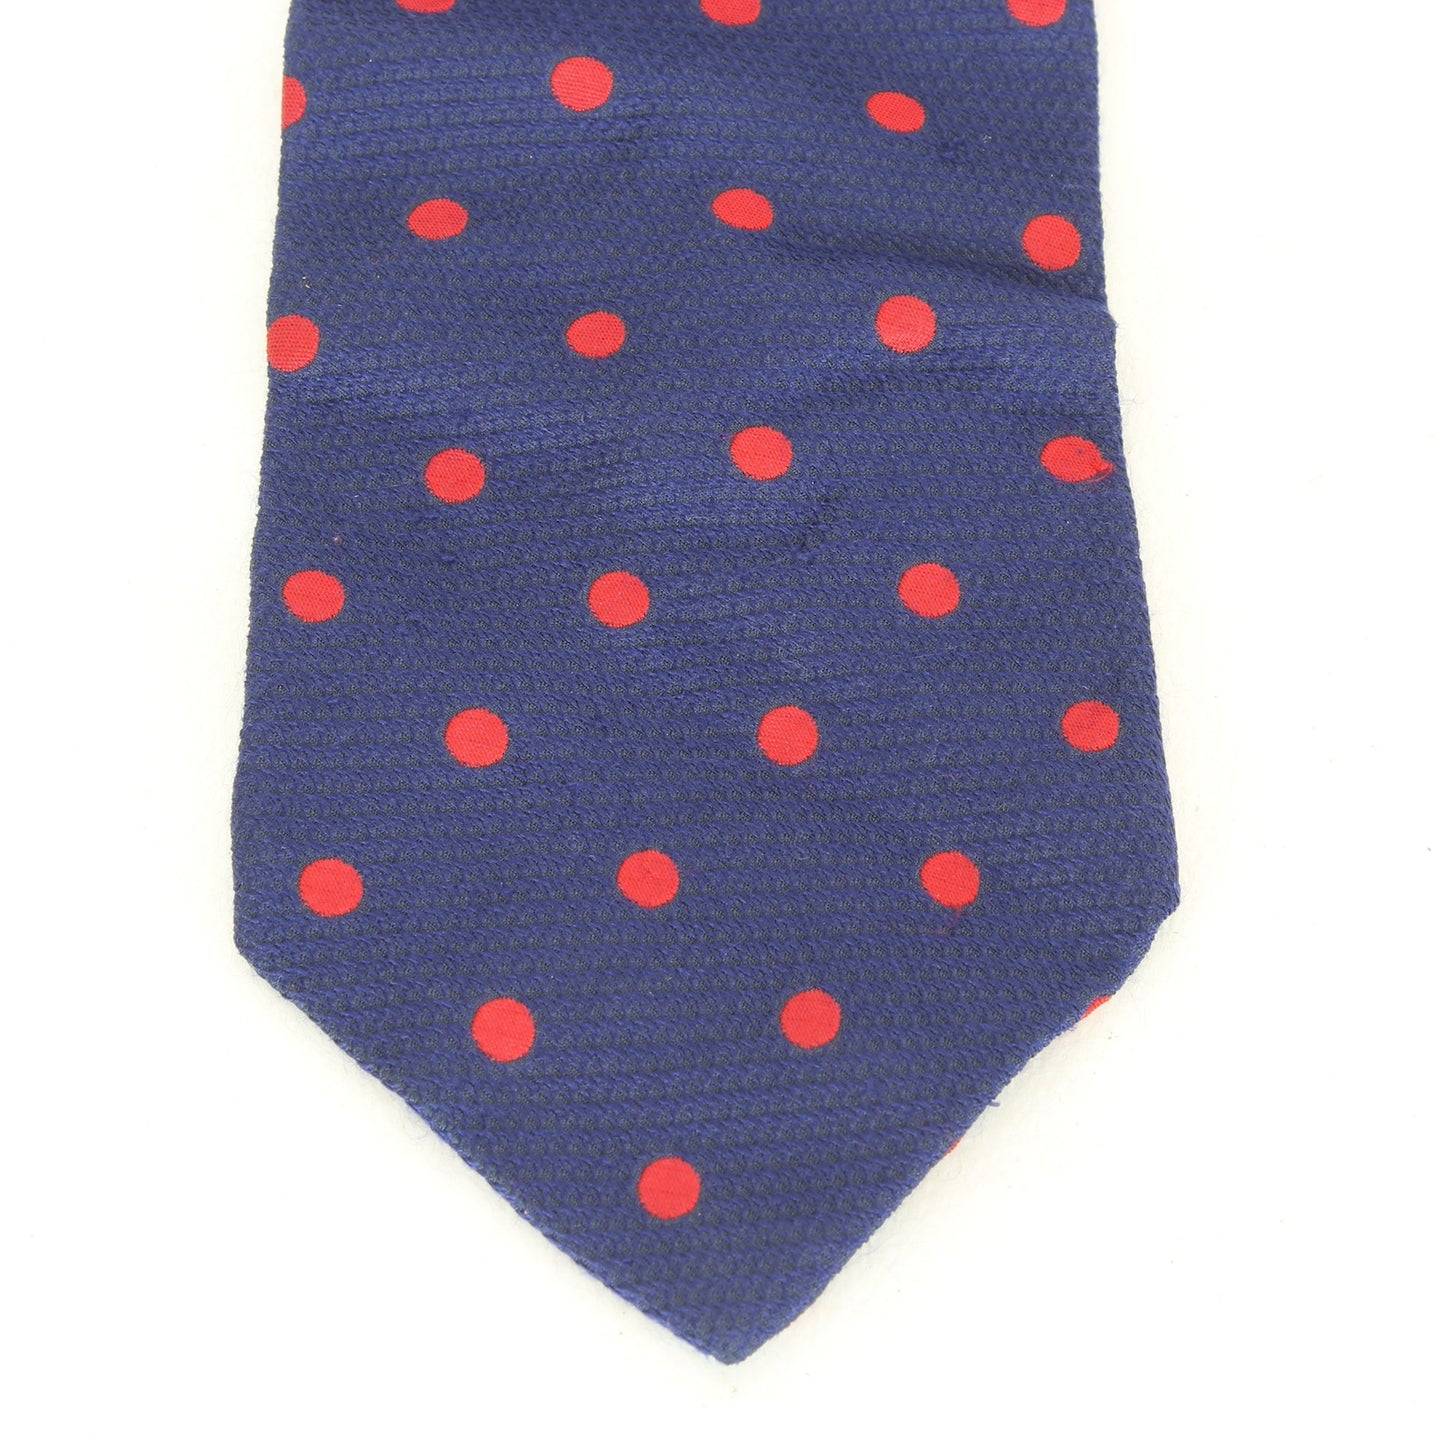 Trussardi Silk Blue Red Polka Dot Tie Vintage 1990s